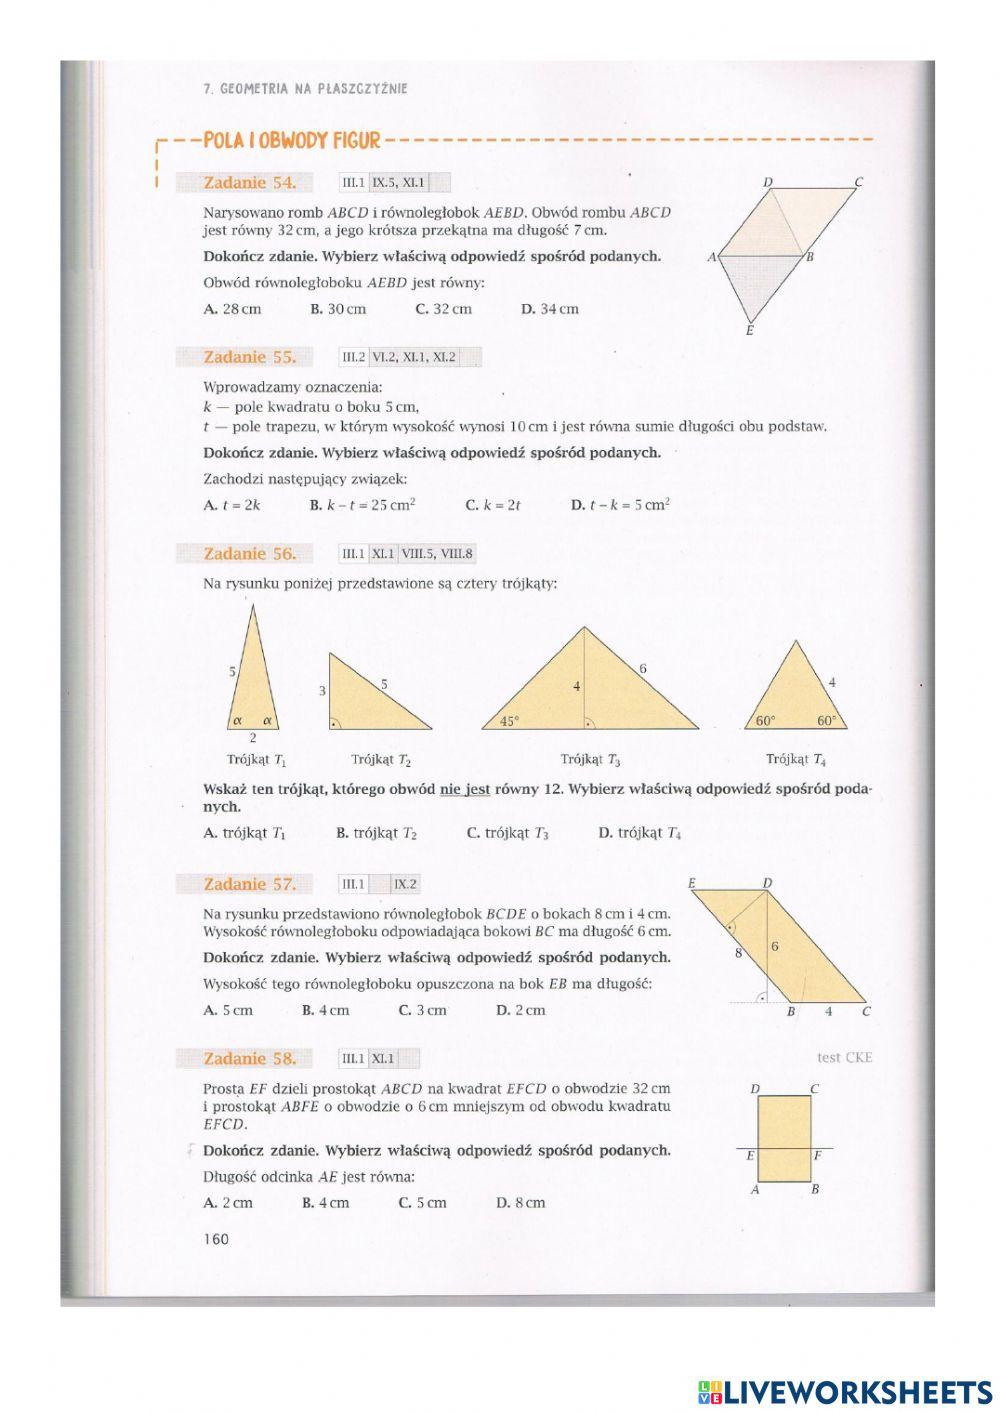 7.3 Geometria na płaszczyźnie - zadania  od 44 do 58